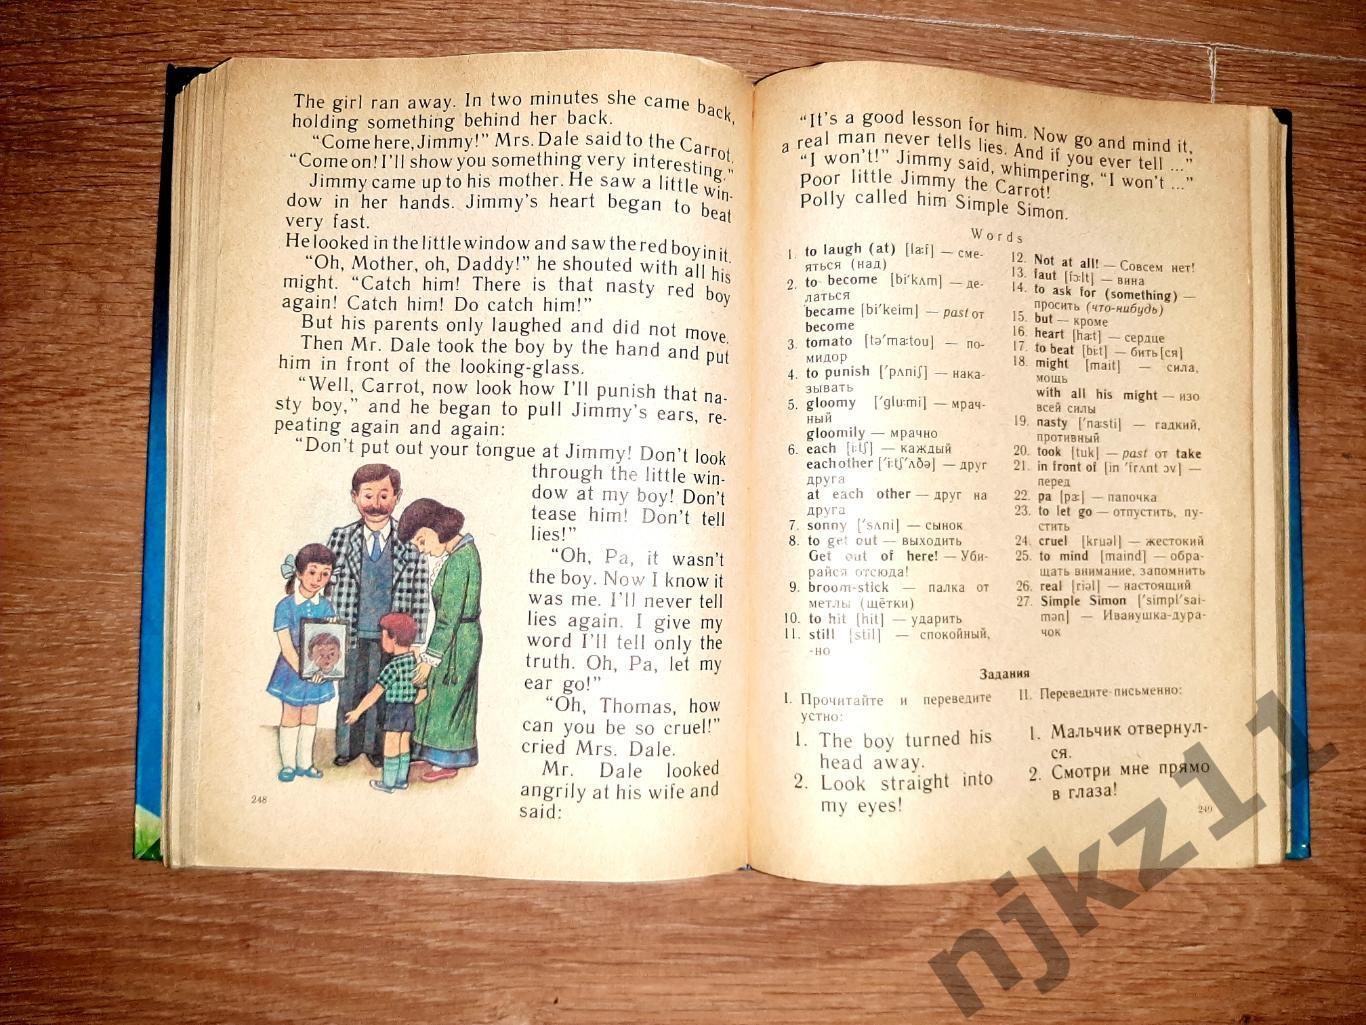 Скультэ, В.И. Английский язык для детей увеличенный формат много страниц 4